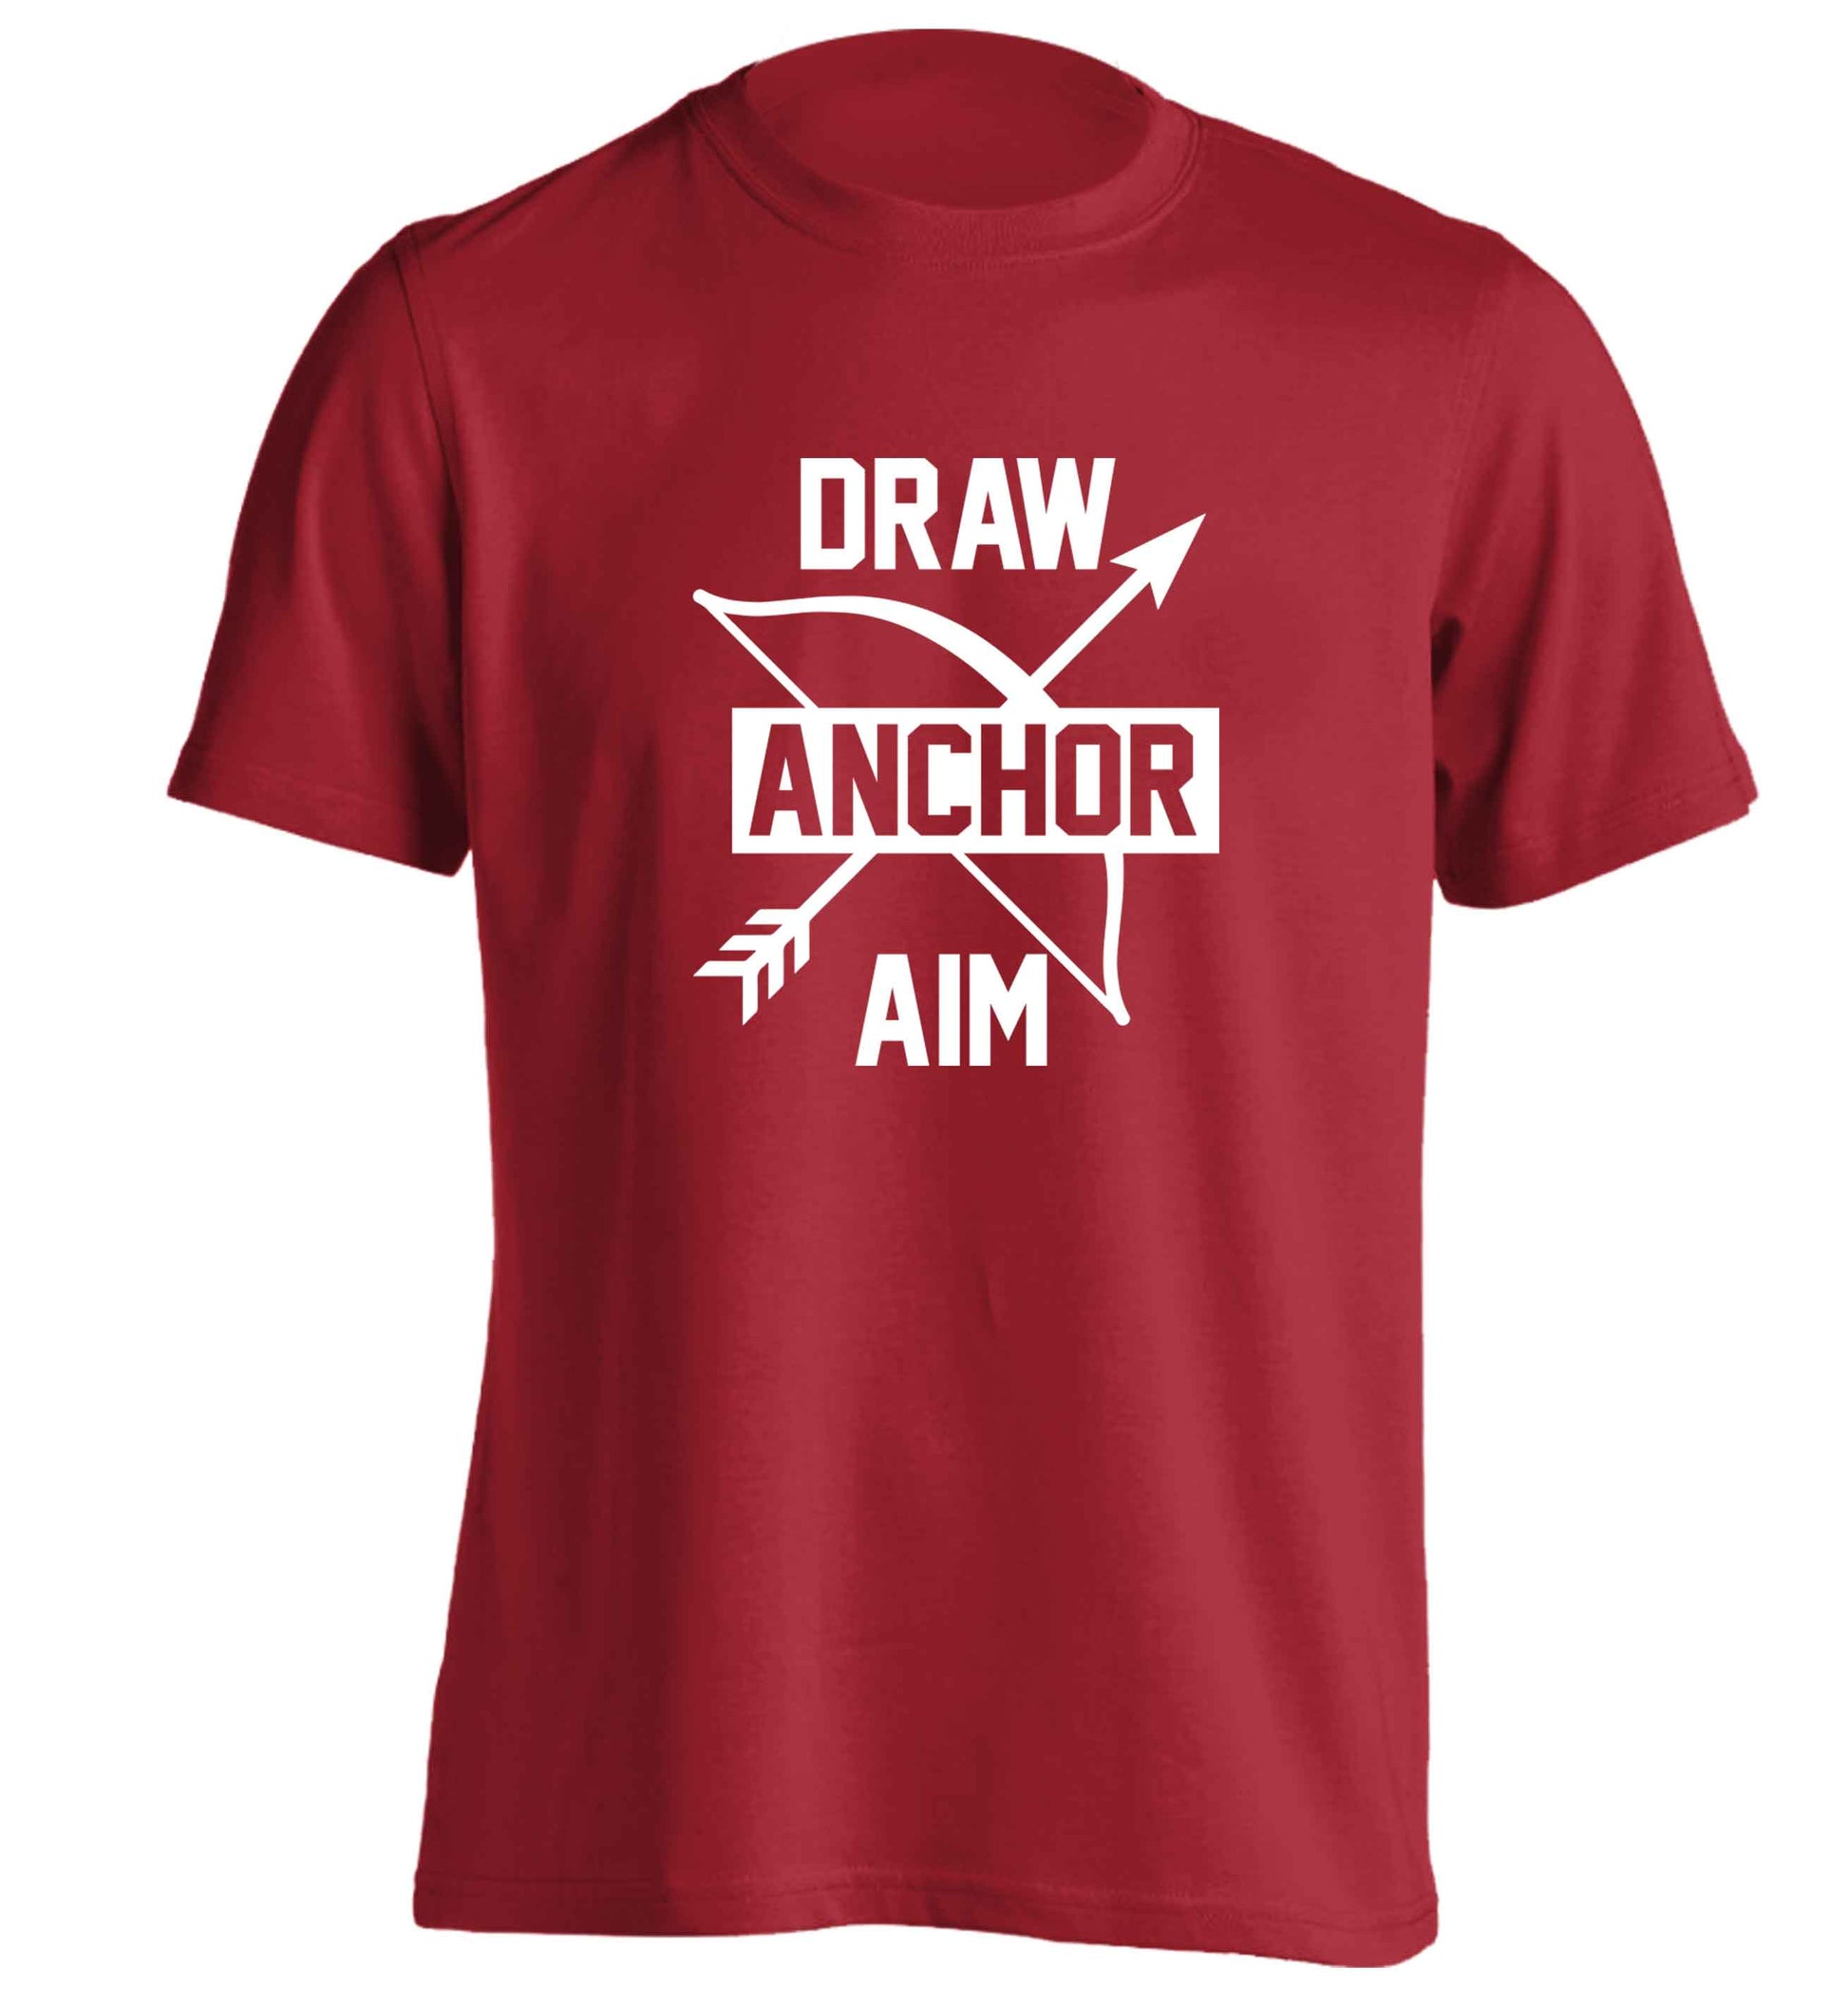 Draw anchor aim adults unisex red Tshirt 2XL